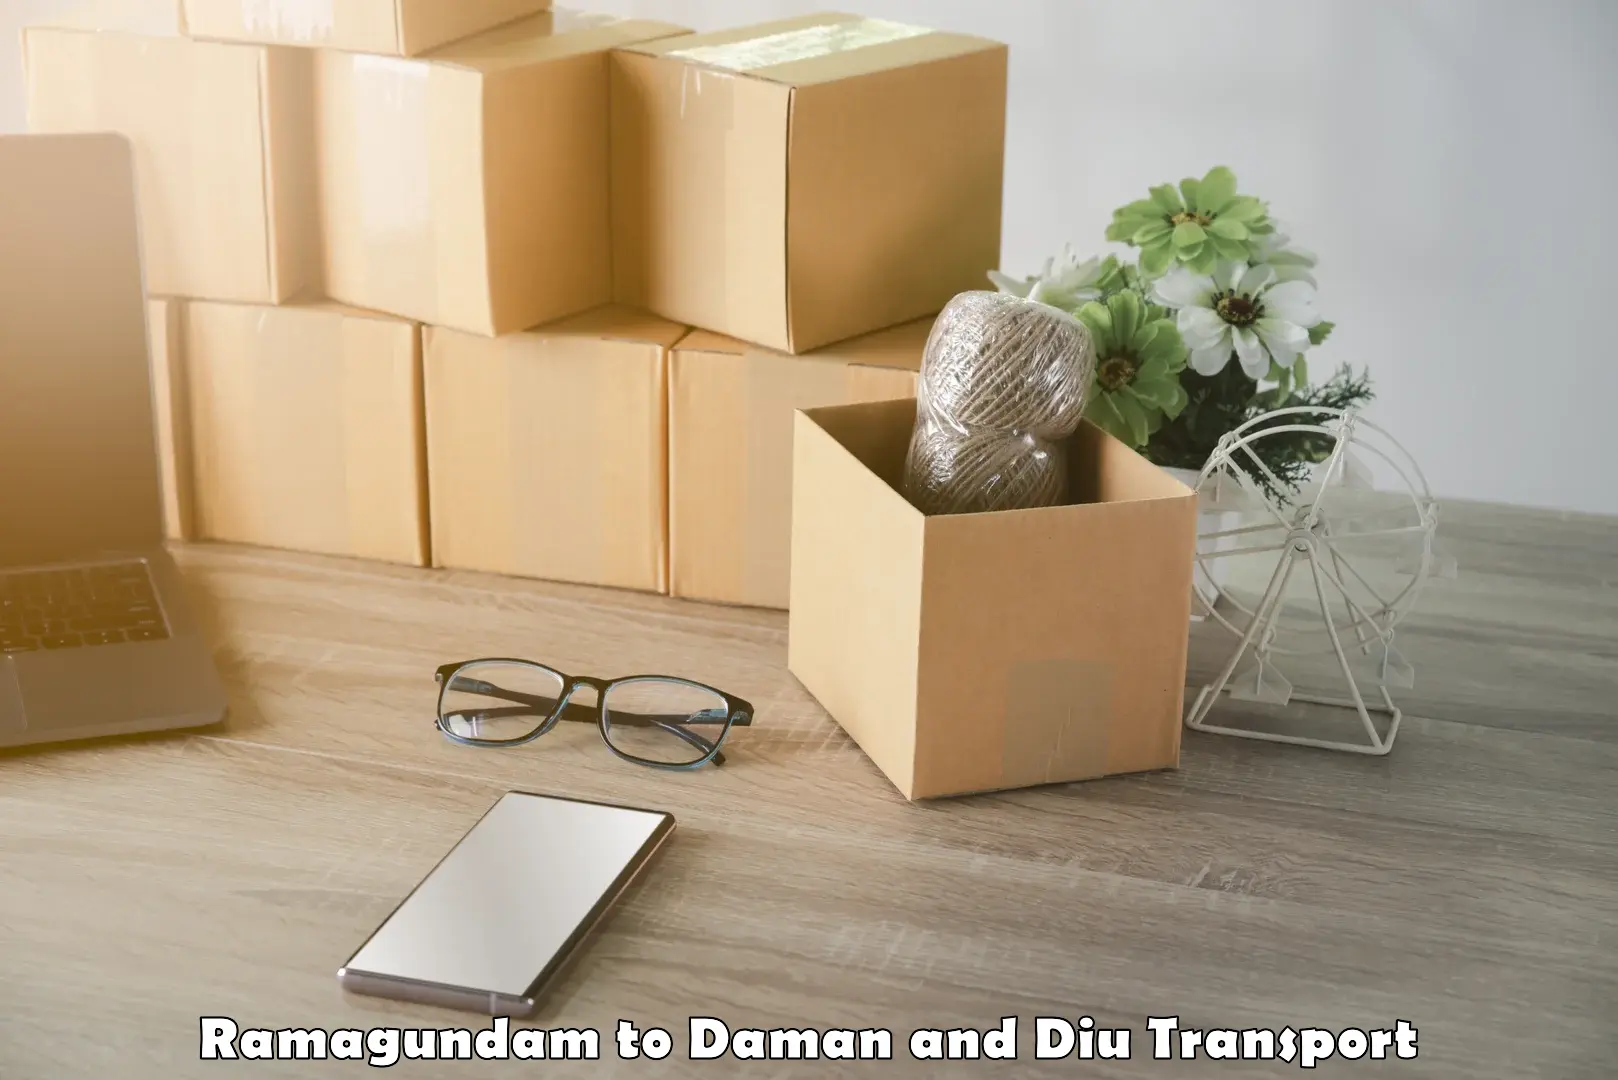 Logistics transportation services Ramagundam to Daman and Diu